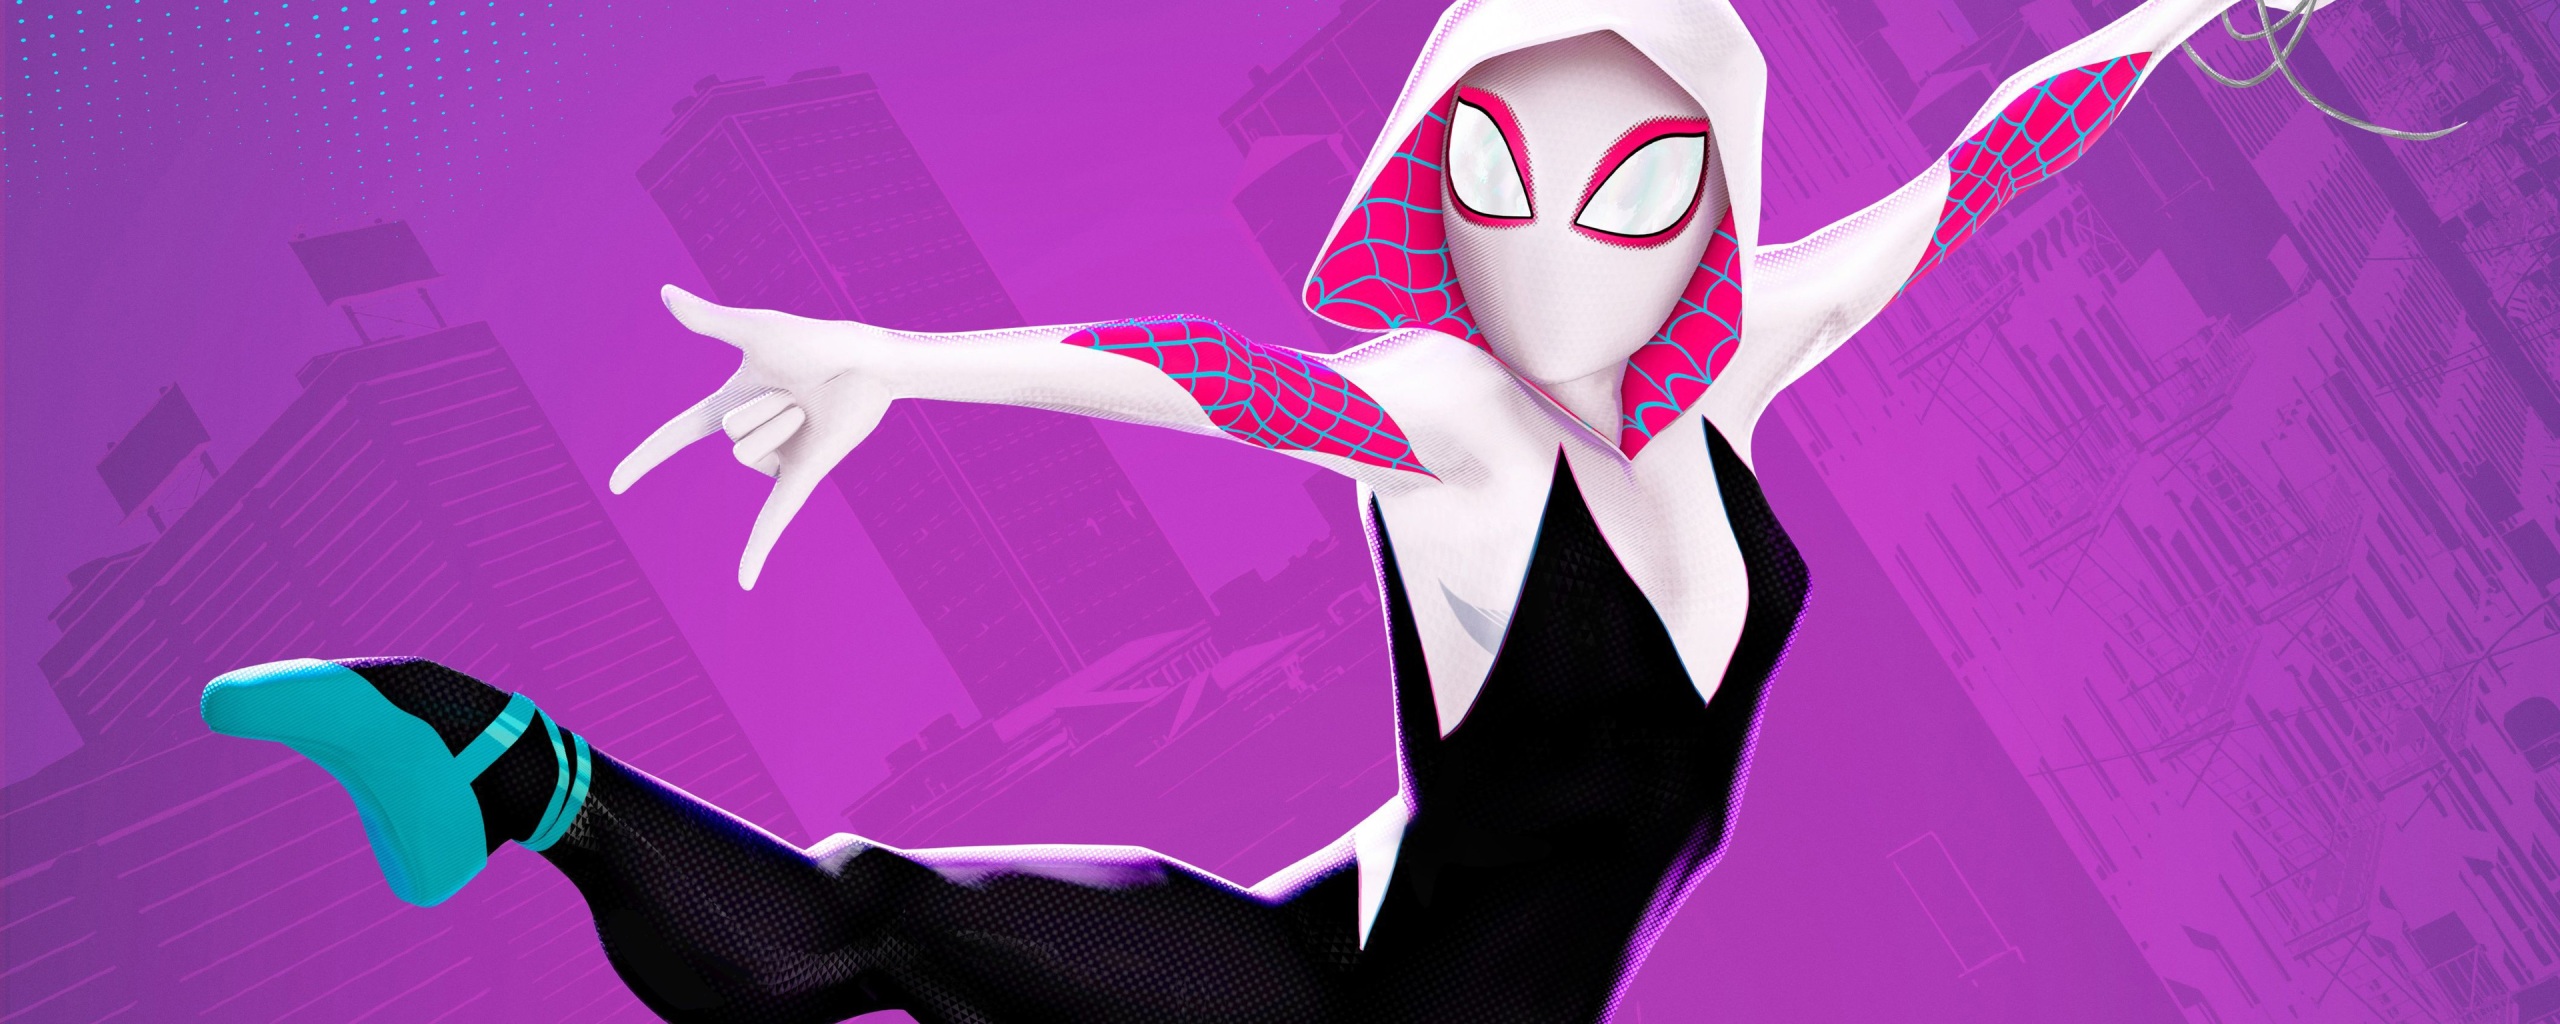 Spider Gwen Art New 4k - 4k Wallpapers - 40.000+ ipad wallpapers 4k ...